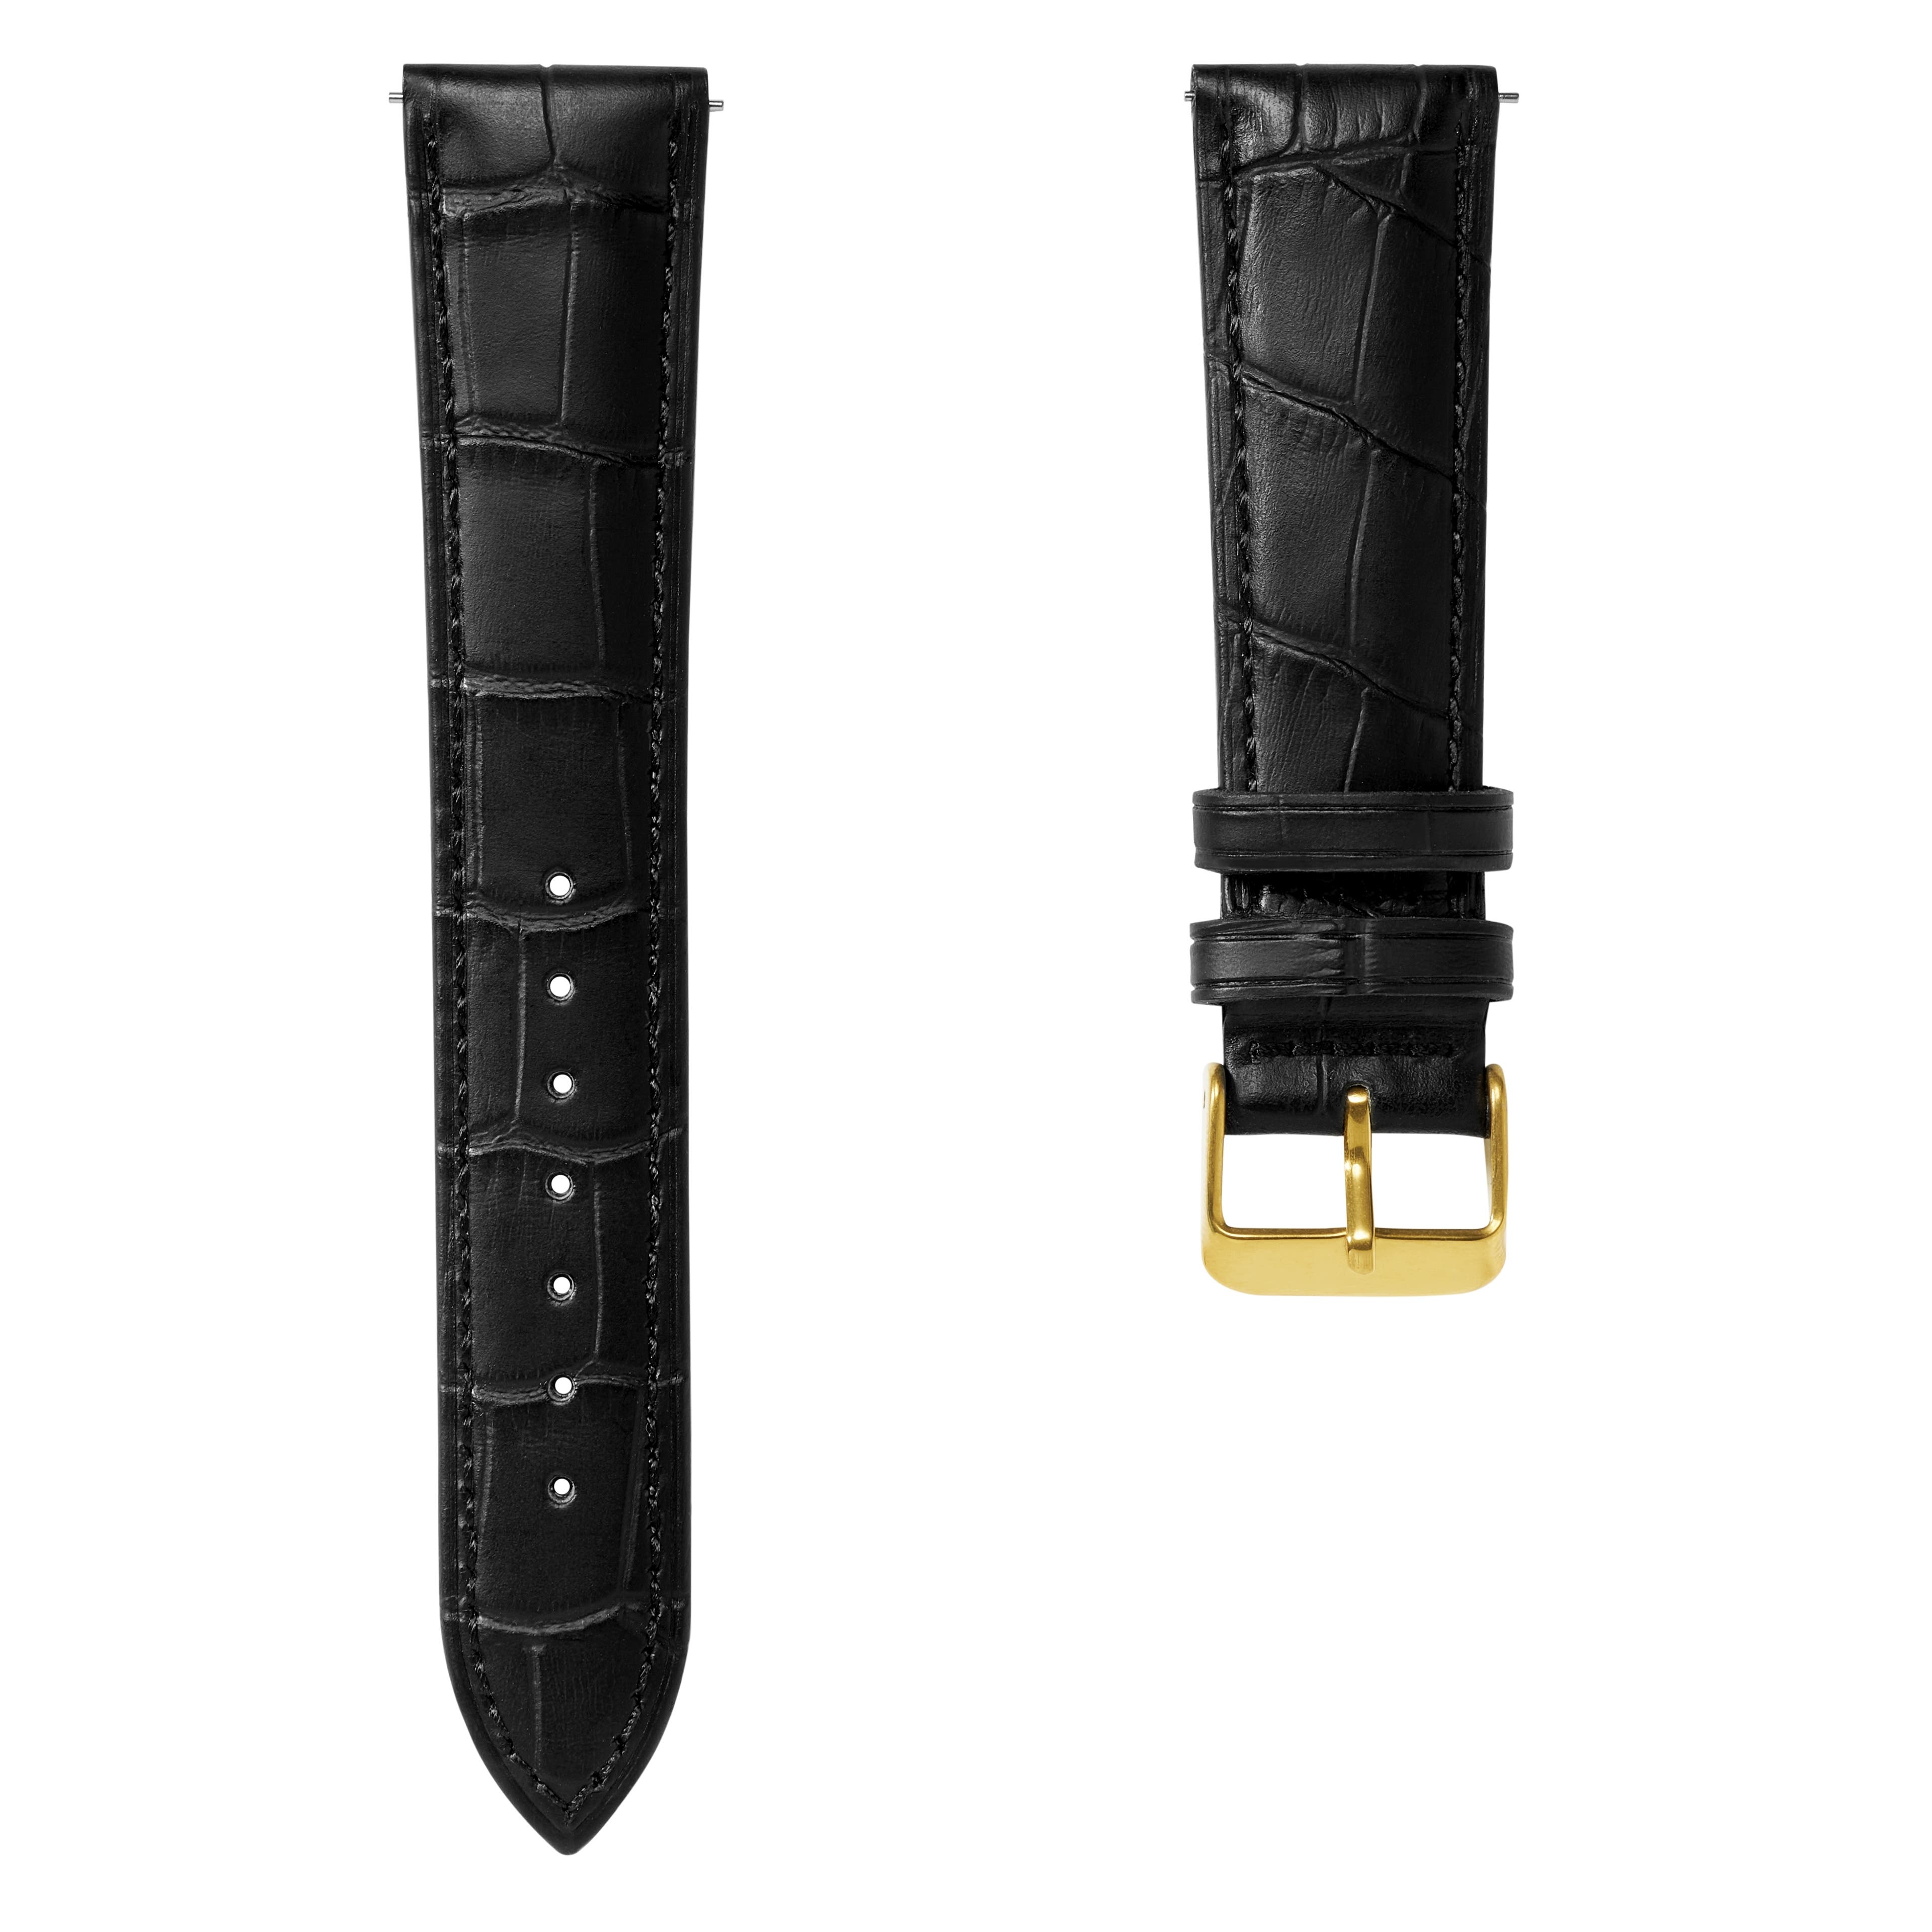  Bracelet de montre en cuir noir à motif crocodile avec boucle couleur or et système d'attache rapide – 20 mm